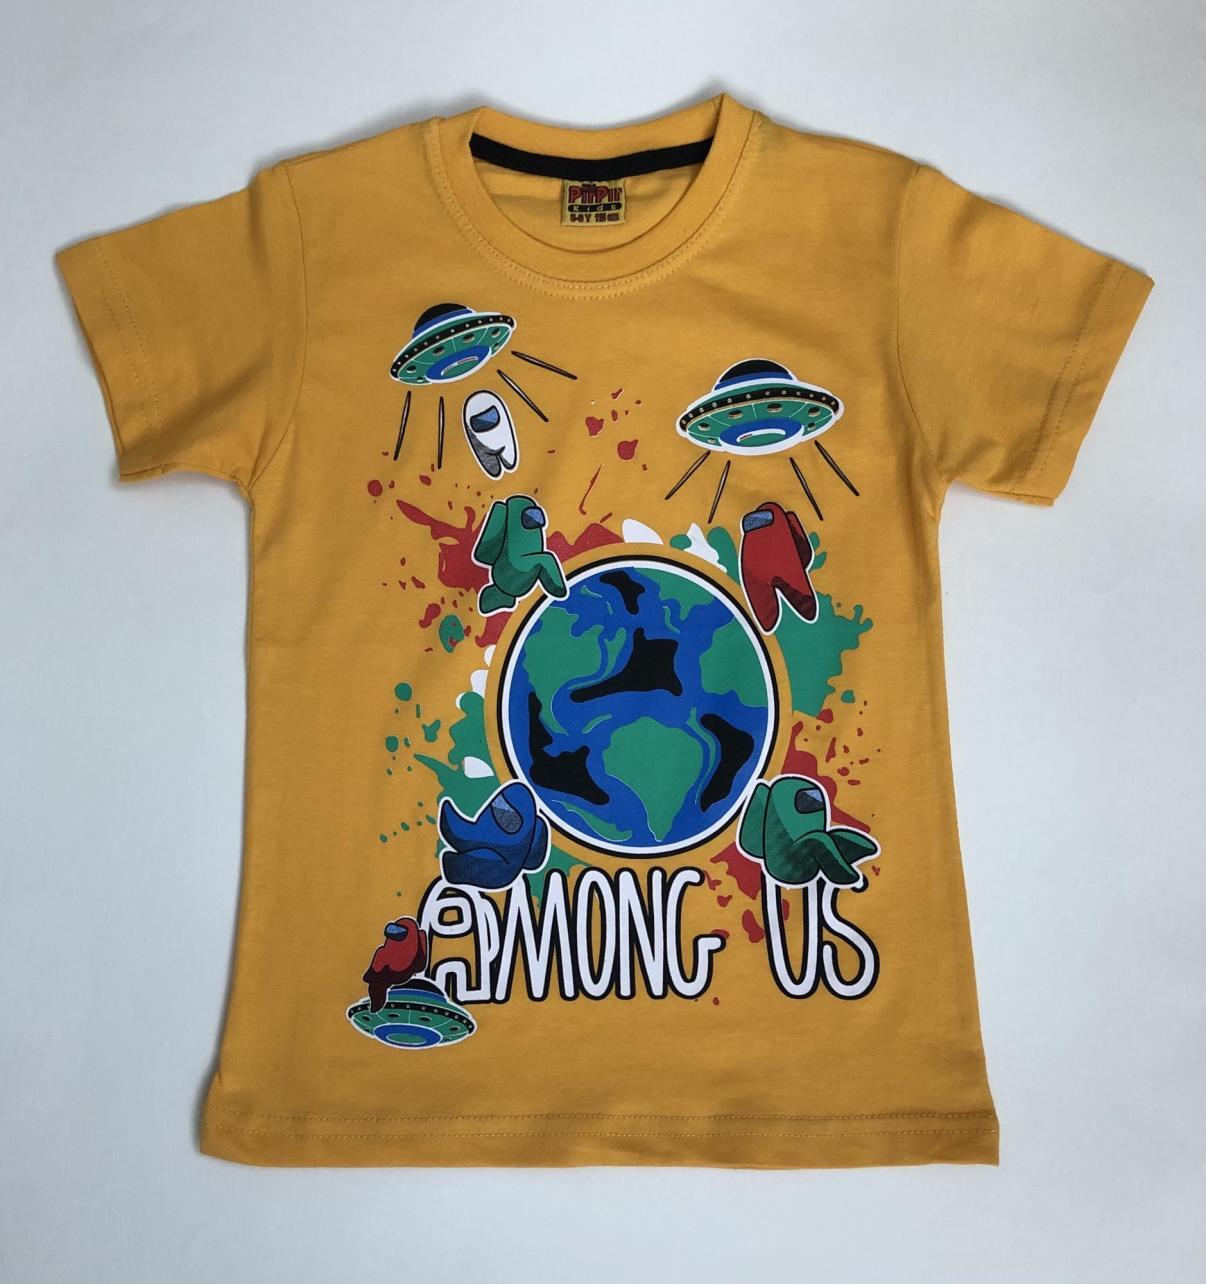 Футболка Озон. Самые дешевые товары на Озоне футболки. Футболки в Озоне по 99 руб. Цветные футболки на Озоне. Озон футболки с надписями